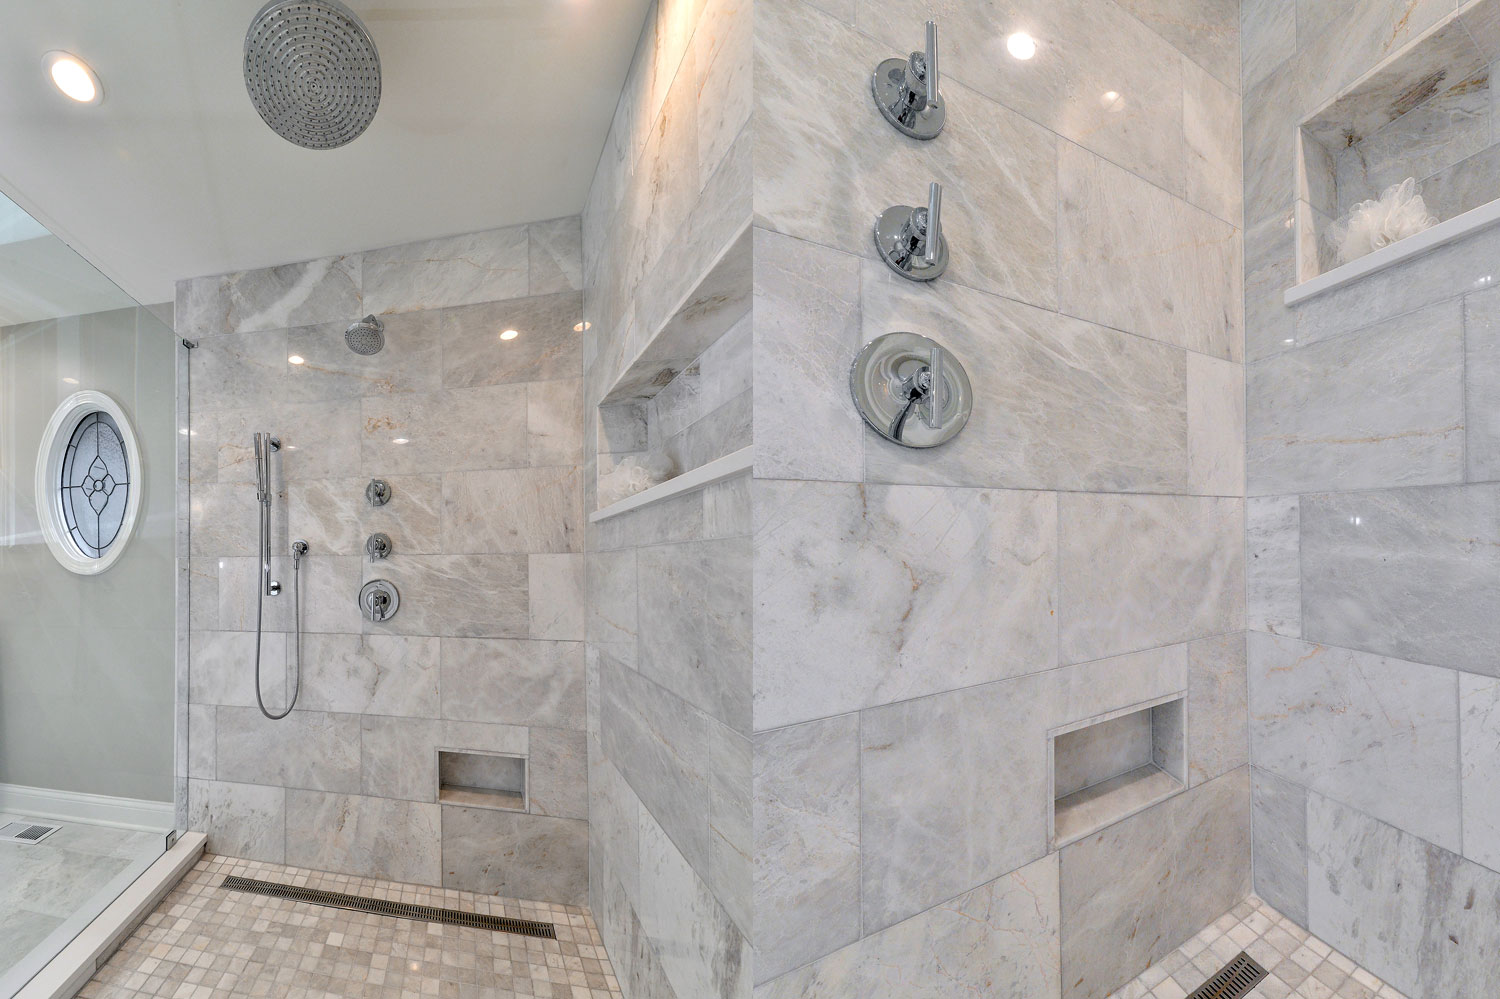 Aurora IL Master Bathroom & Bedroom Remodeling Project - Sebring Design Build